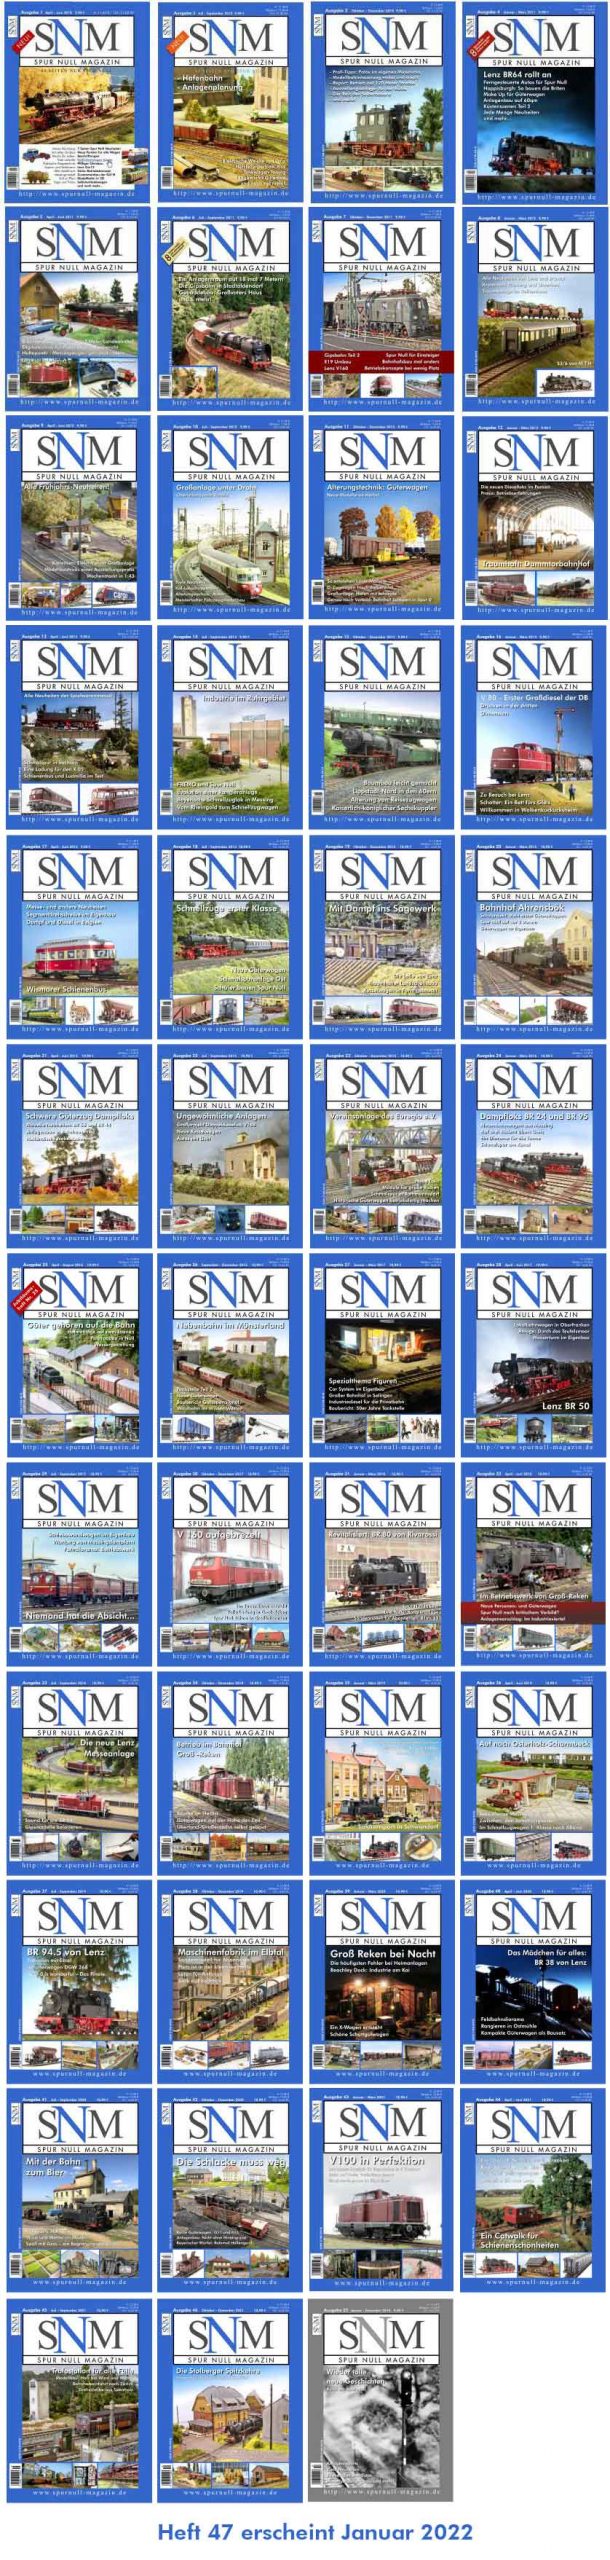 Titelbilder SNM Heft 1-46